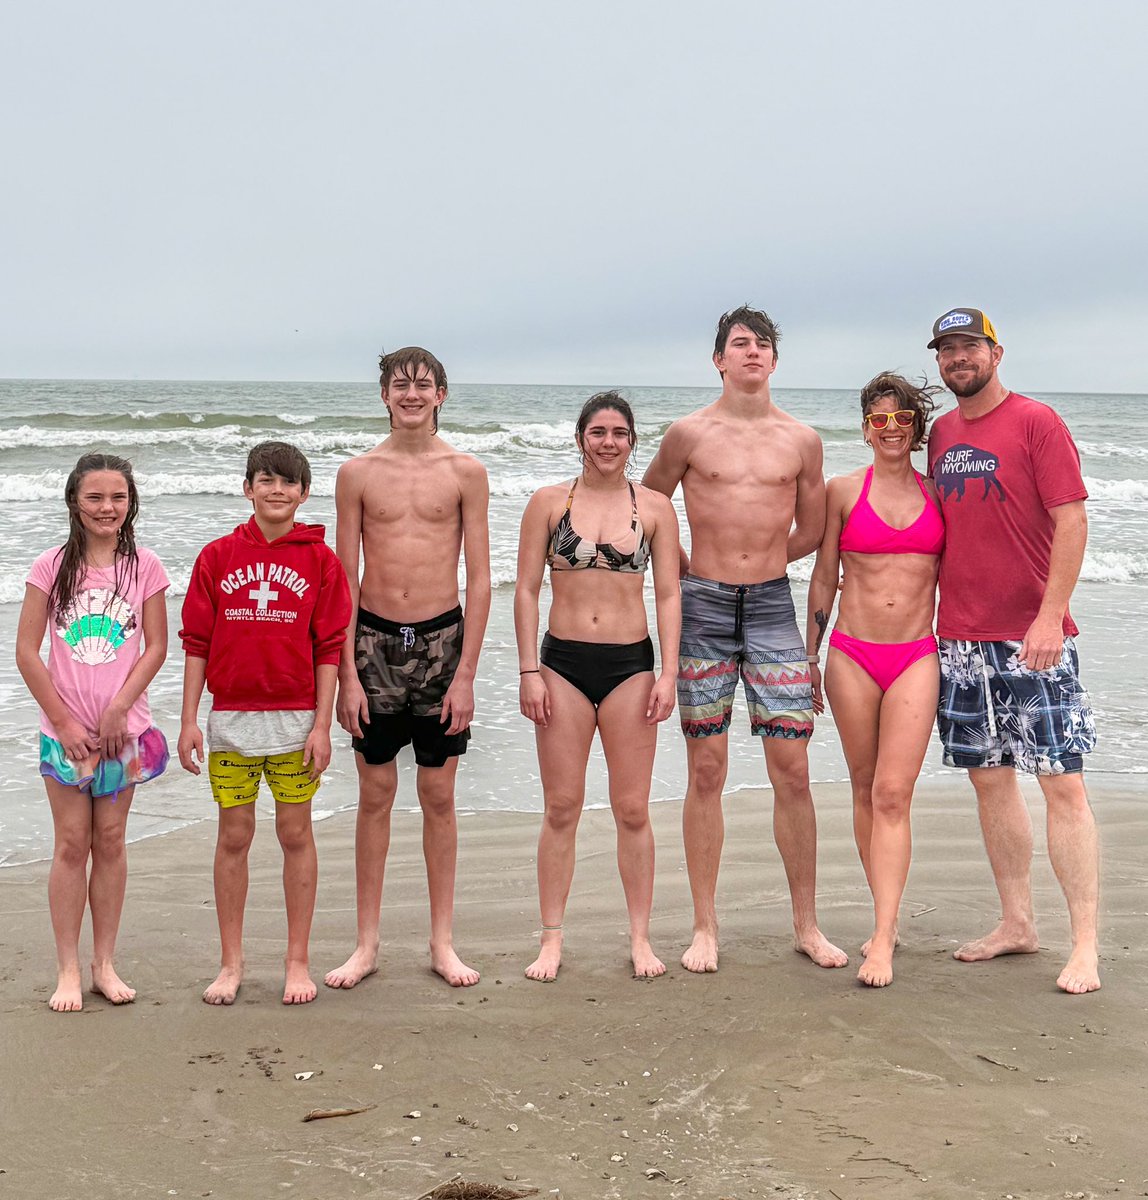 Family time 🥰 #beachvacation #galveston #texas